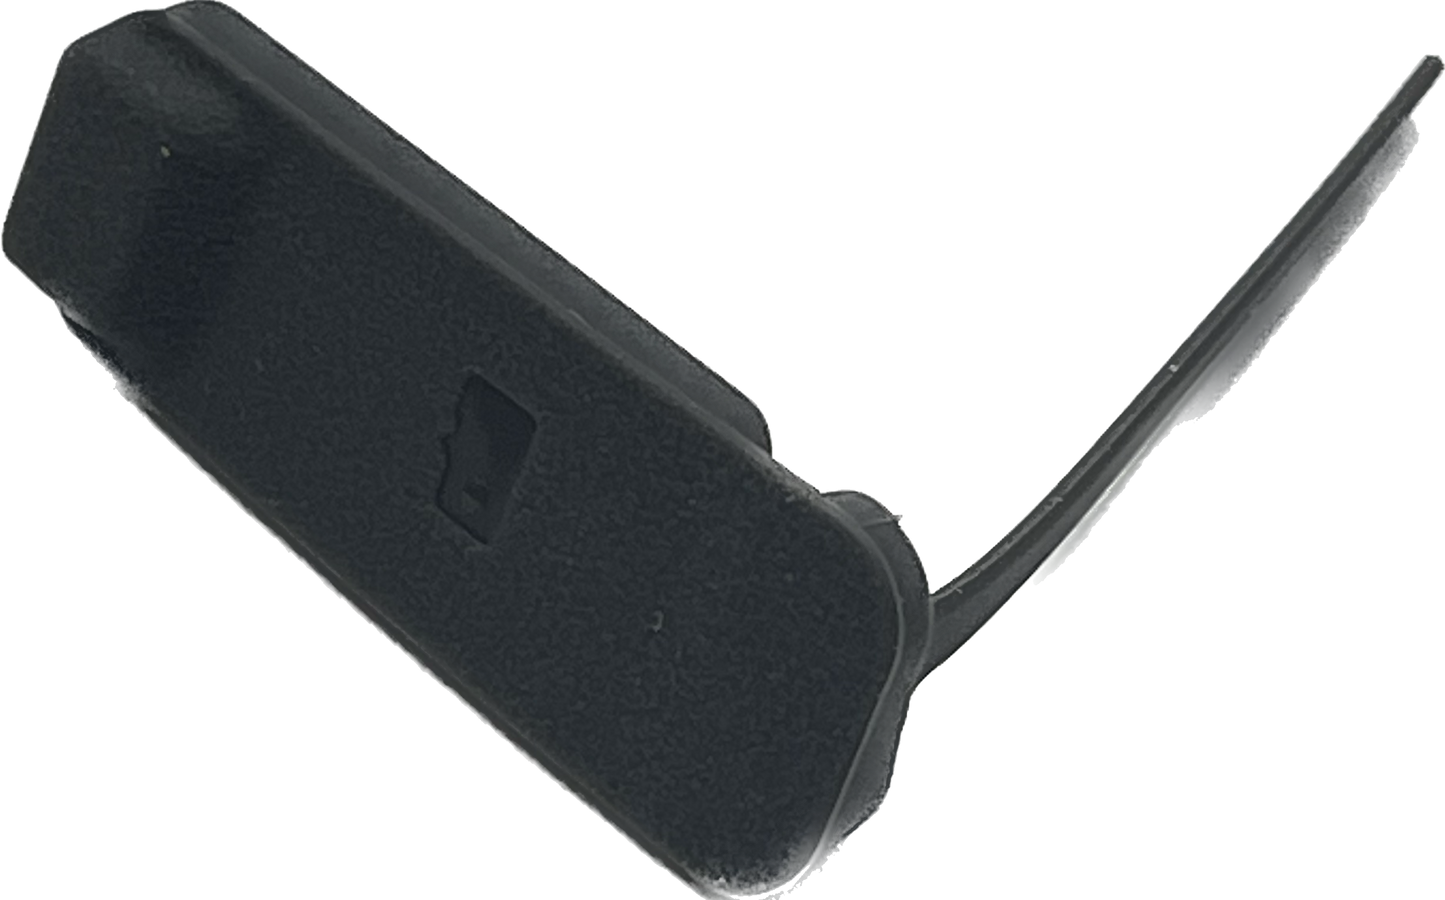 DJI Matrice 30 microSD Card Rubber Stopper